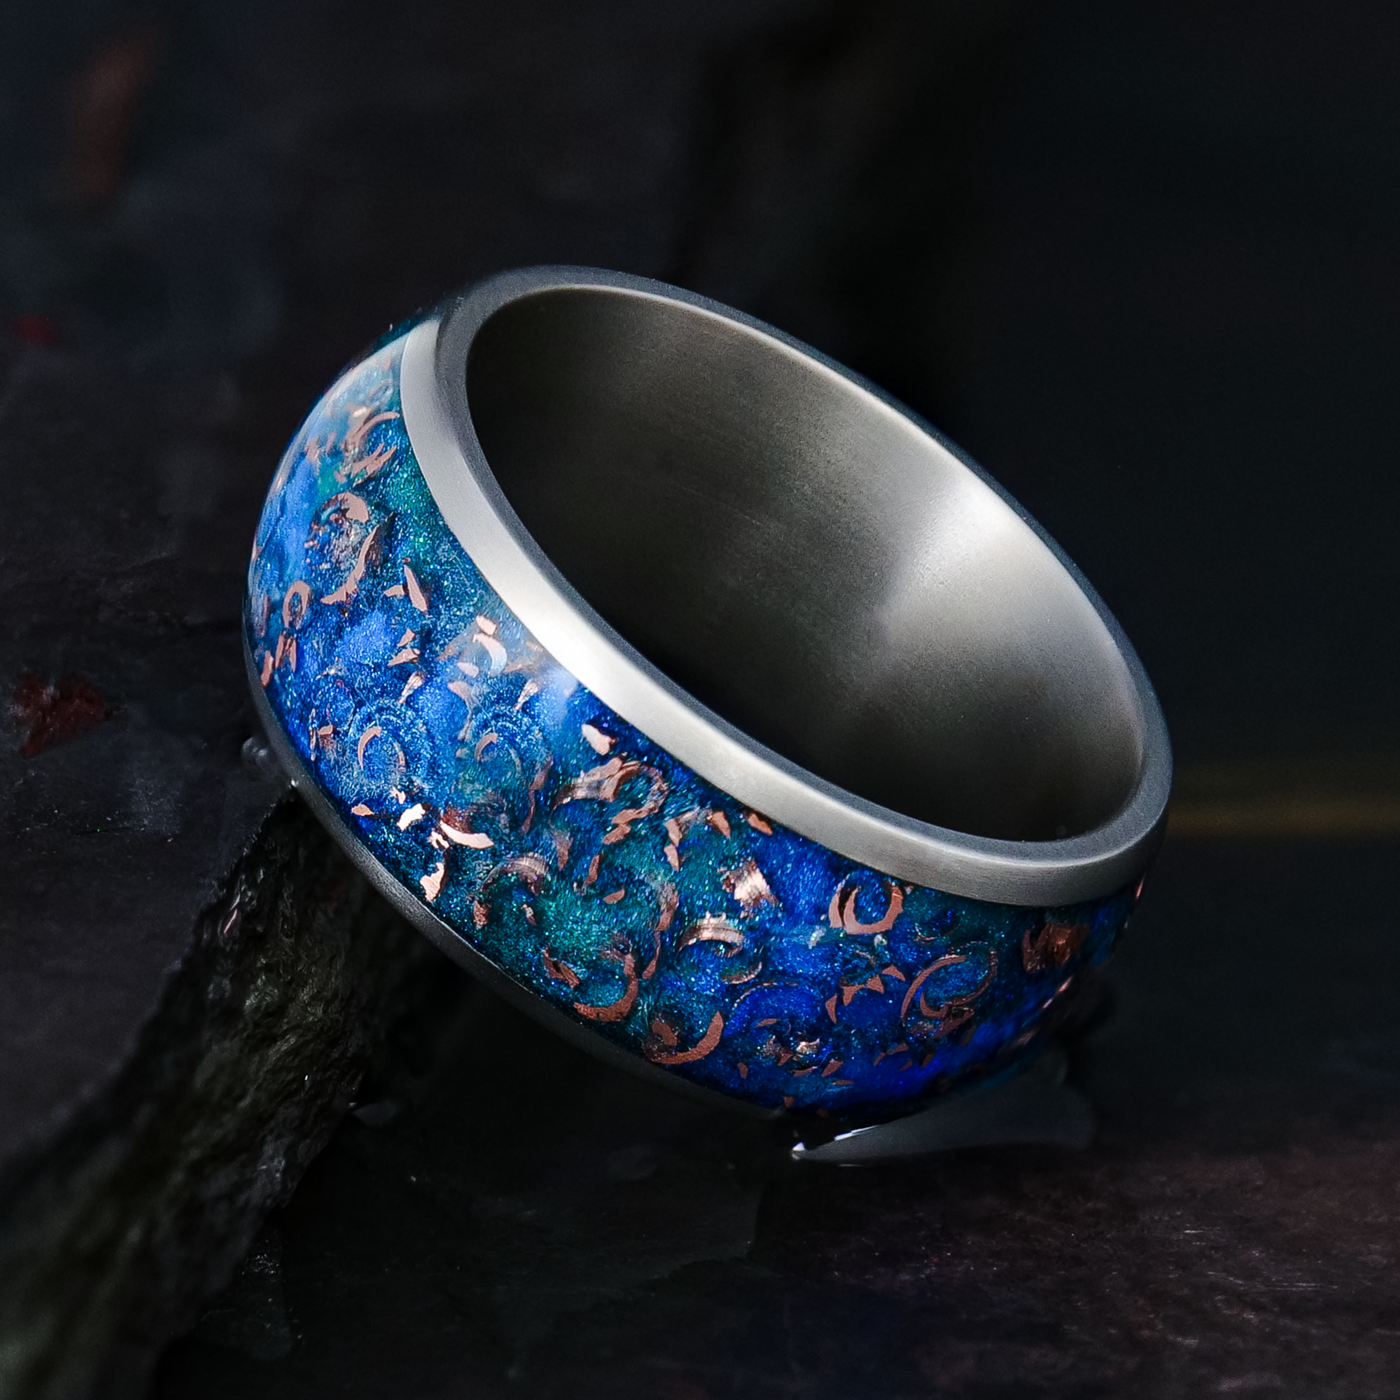 Sunken Artifact Halo Ring on Titanium - Patrick Adair Designs